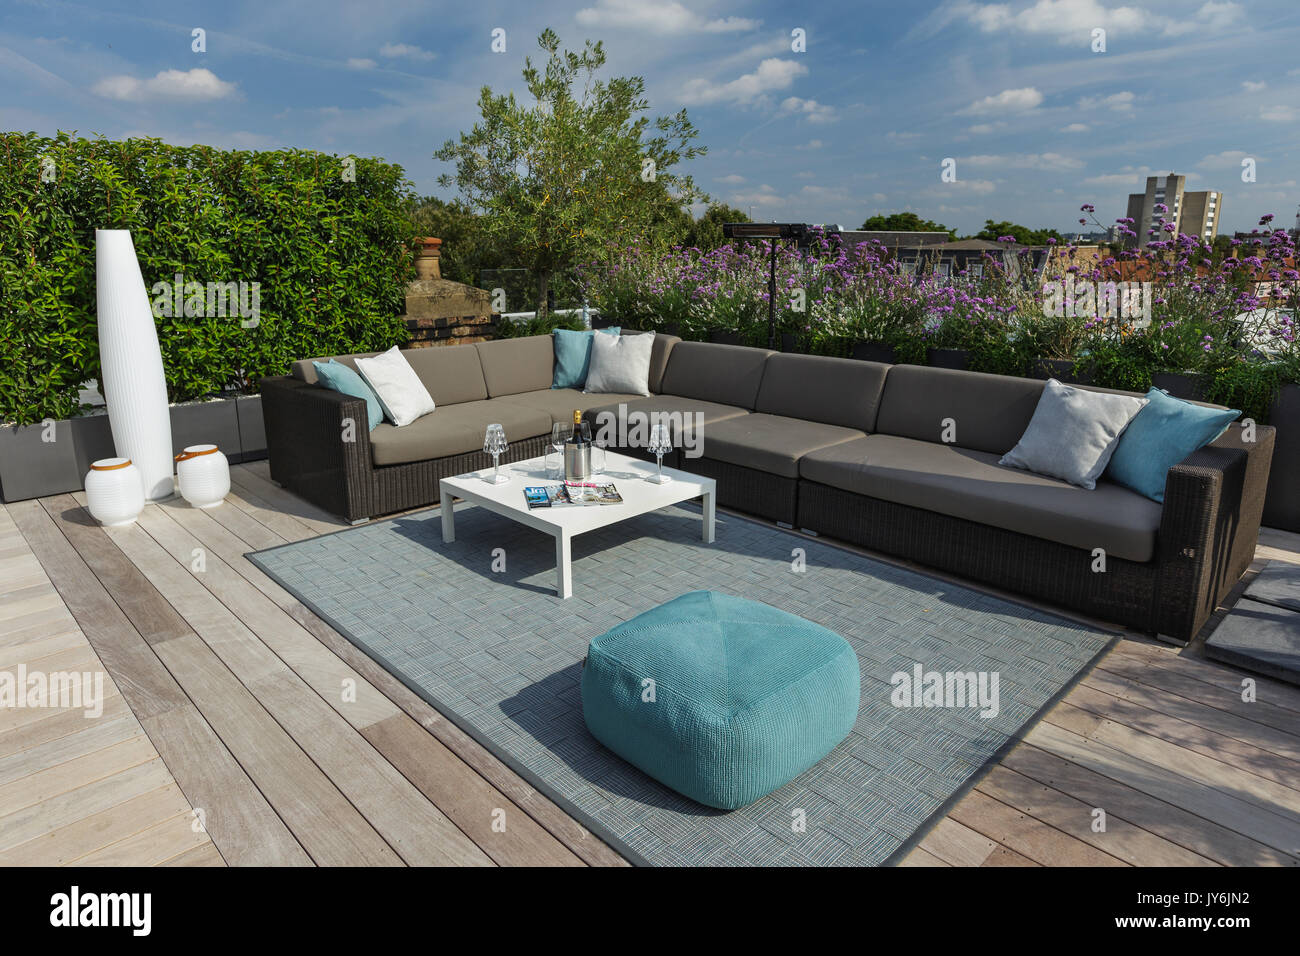 Toit-terrasse de luxe à Londres avec des scieries de bois, contemporaine à la plantation luxuriante et mobilier moderne Banque D'Images